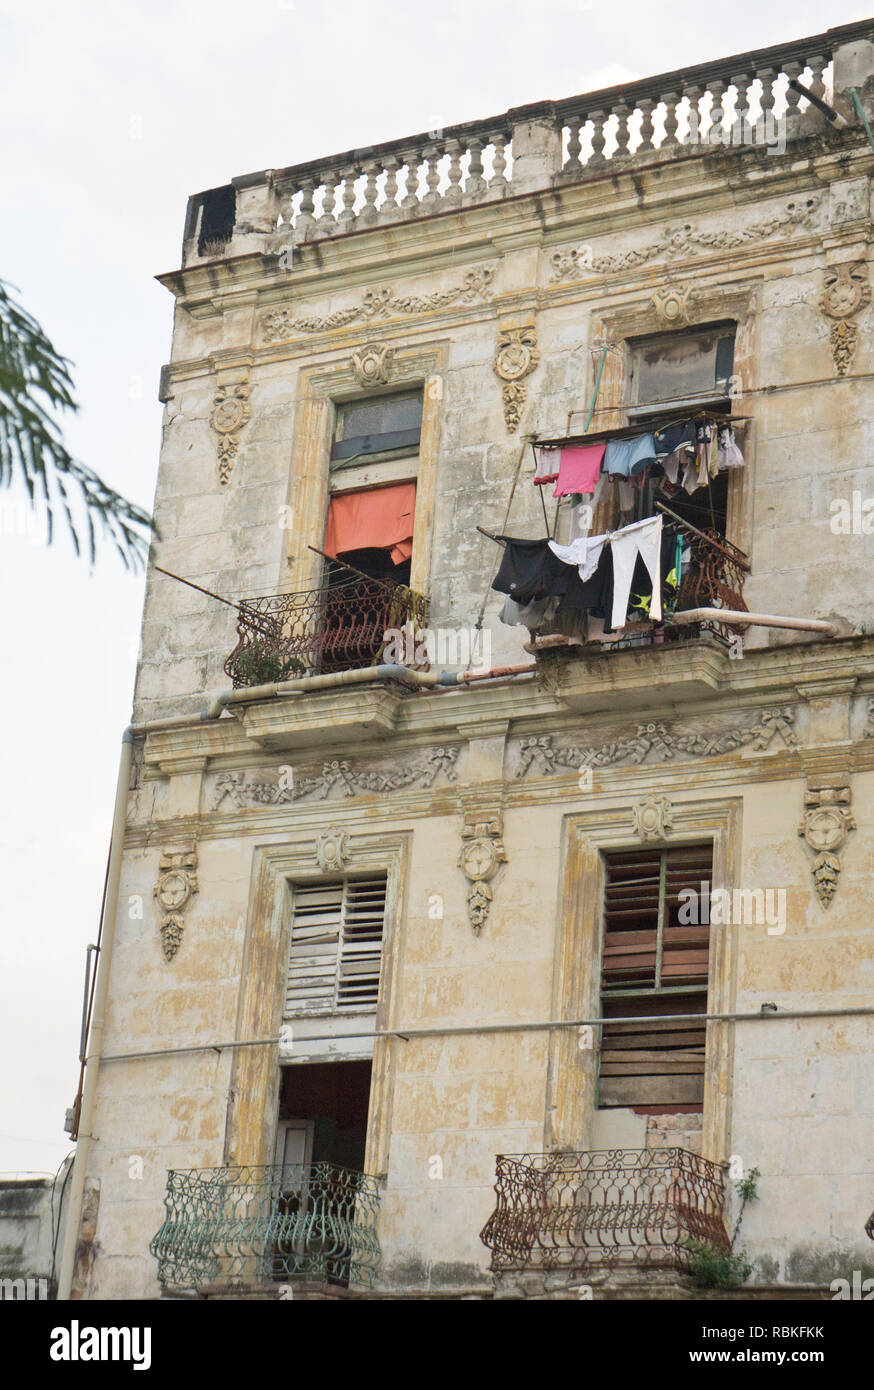 Fkk filme in Havana